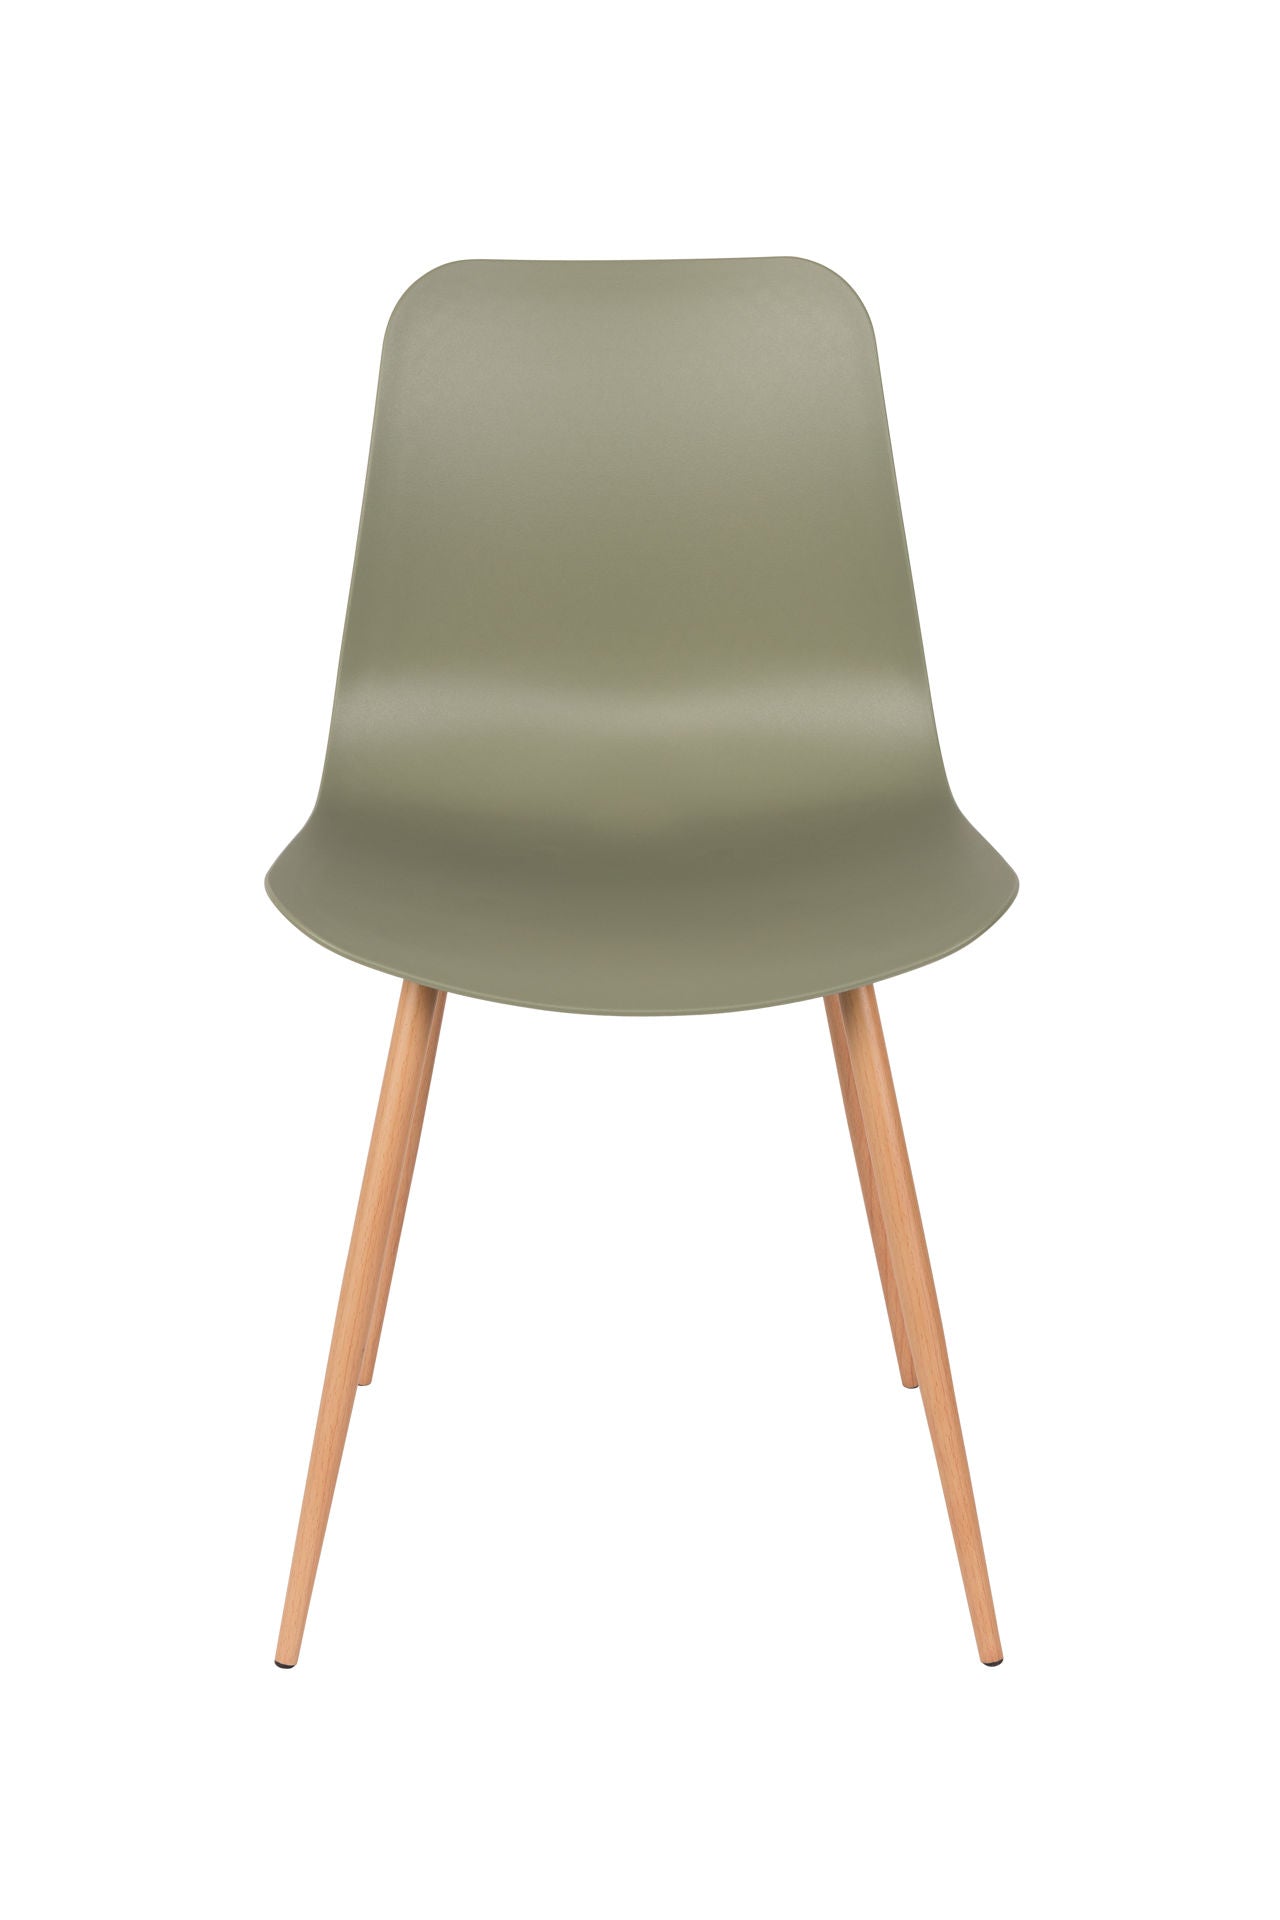 Nancy's South Kensington Chair - Scandinavisch - Groen, Bruin - Polypryleen, IJzer, Hout - 49 cm x 44,5 cm x 80 cm